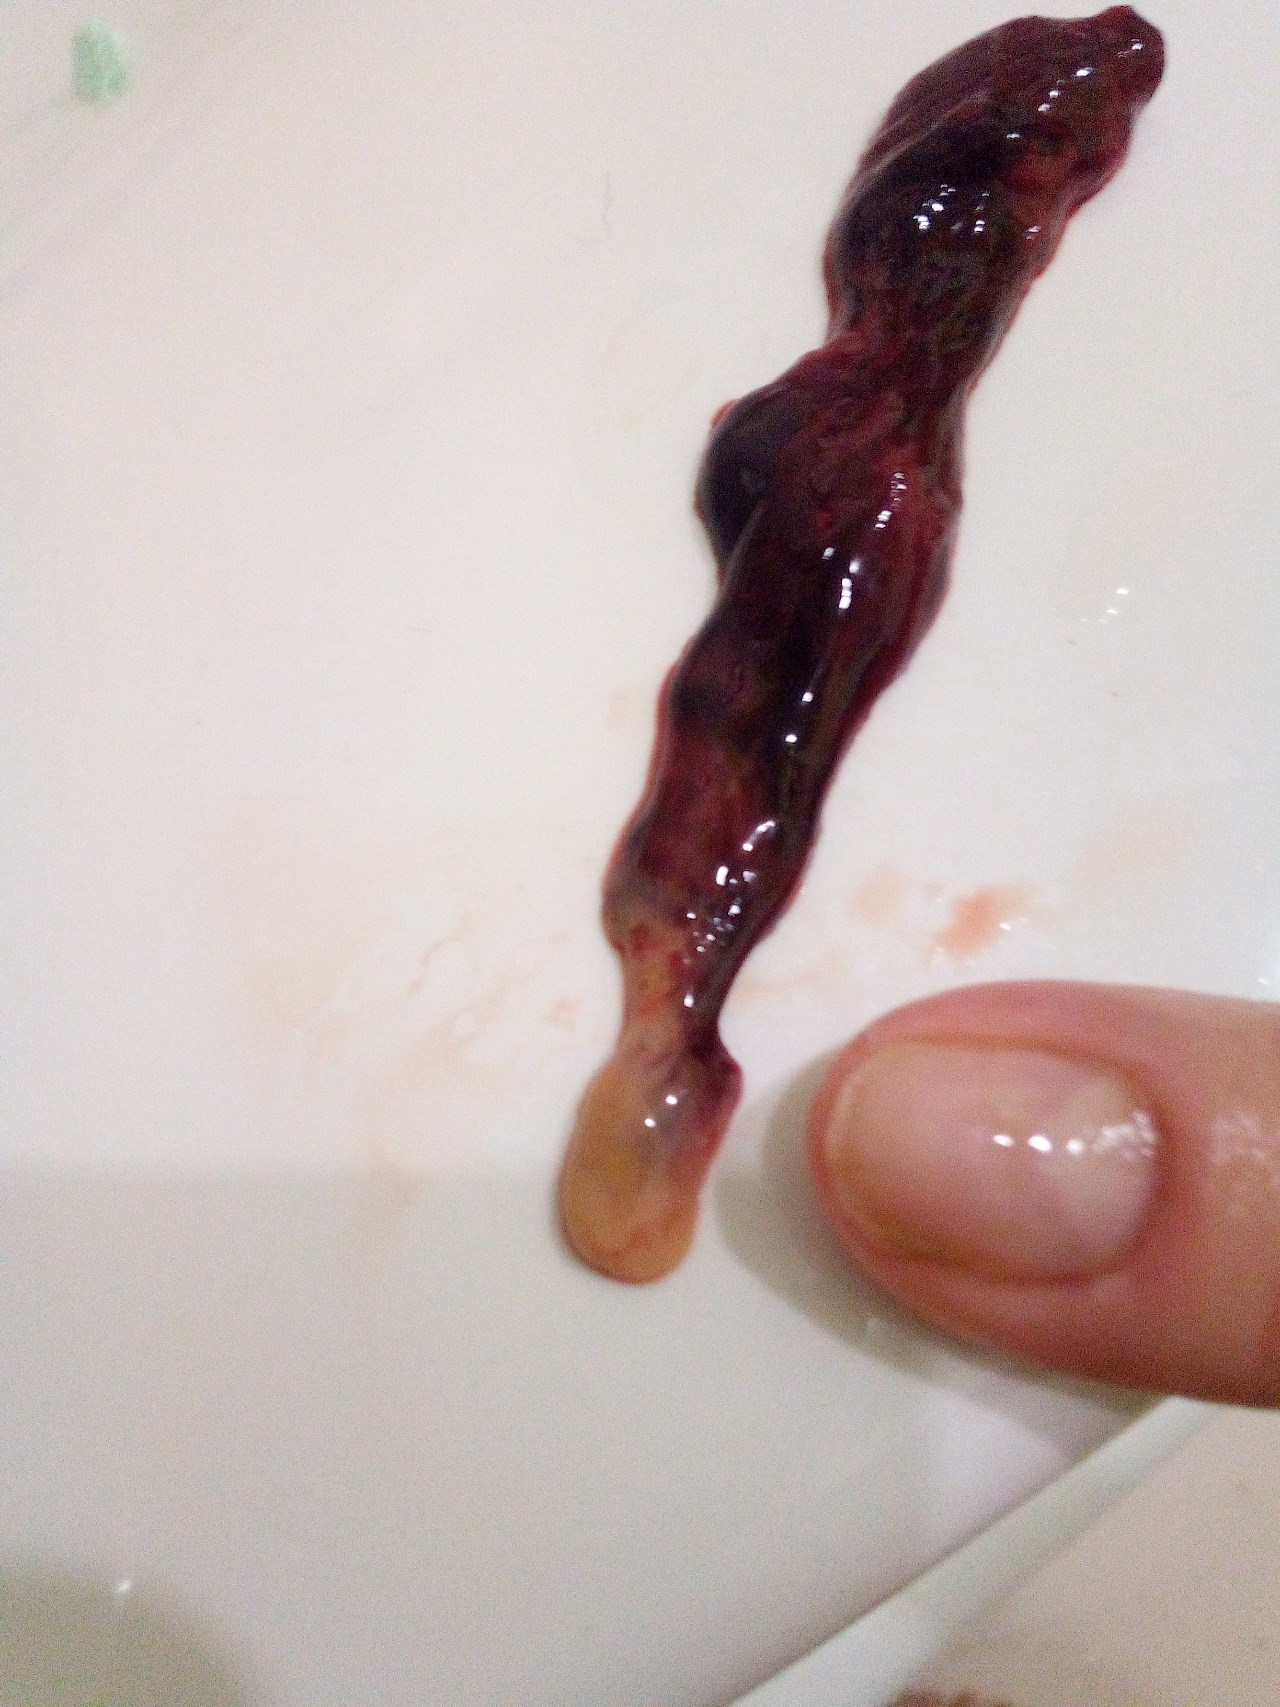 сгустки крови в сперме мужчин фото 46